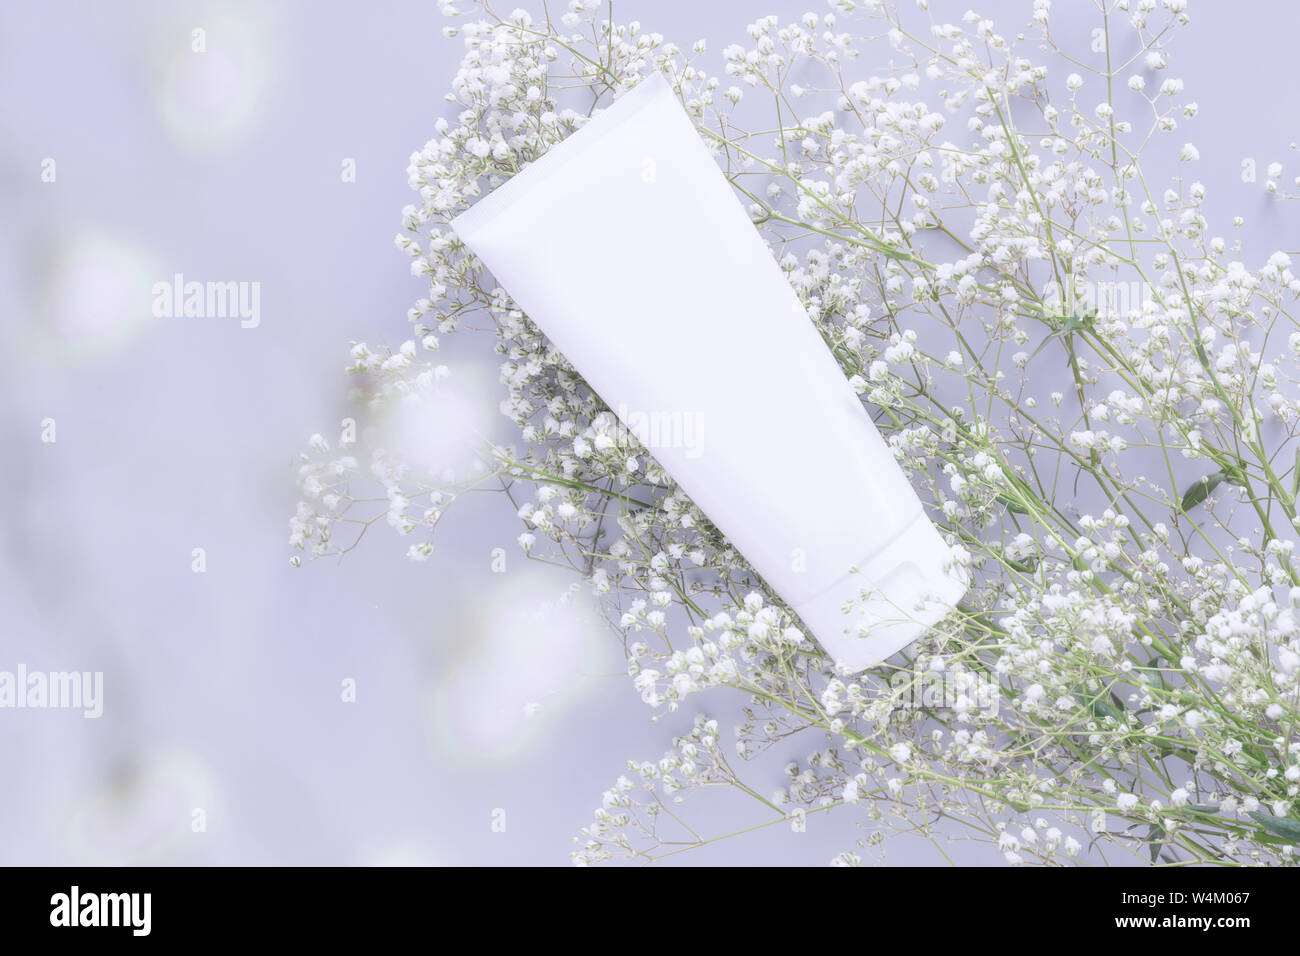 Kosmetischer Natur organische Hautpflege Kosmetik Konzept. Weiß in Weiß tube Container mit leeres Etikett für das Branding Verpackung mock up, mit Wh dekorieren Stockfoto